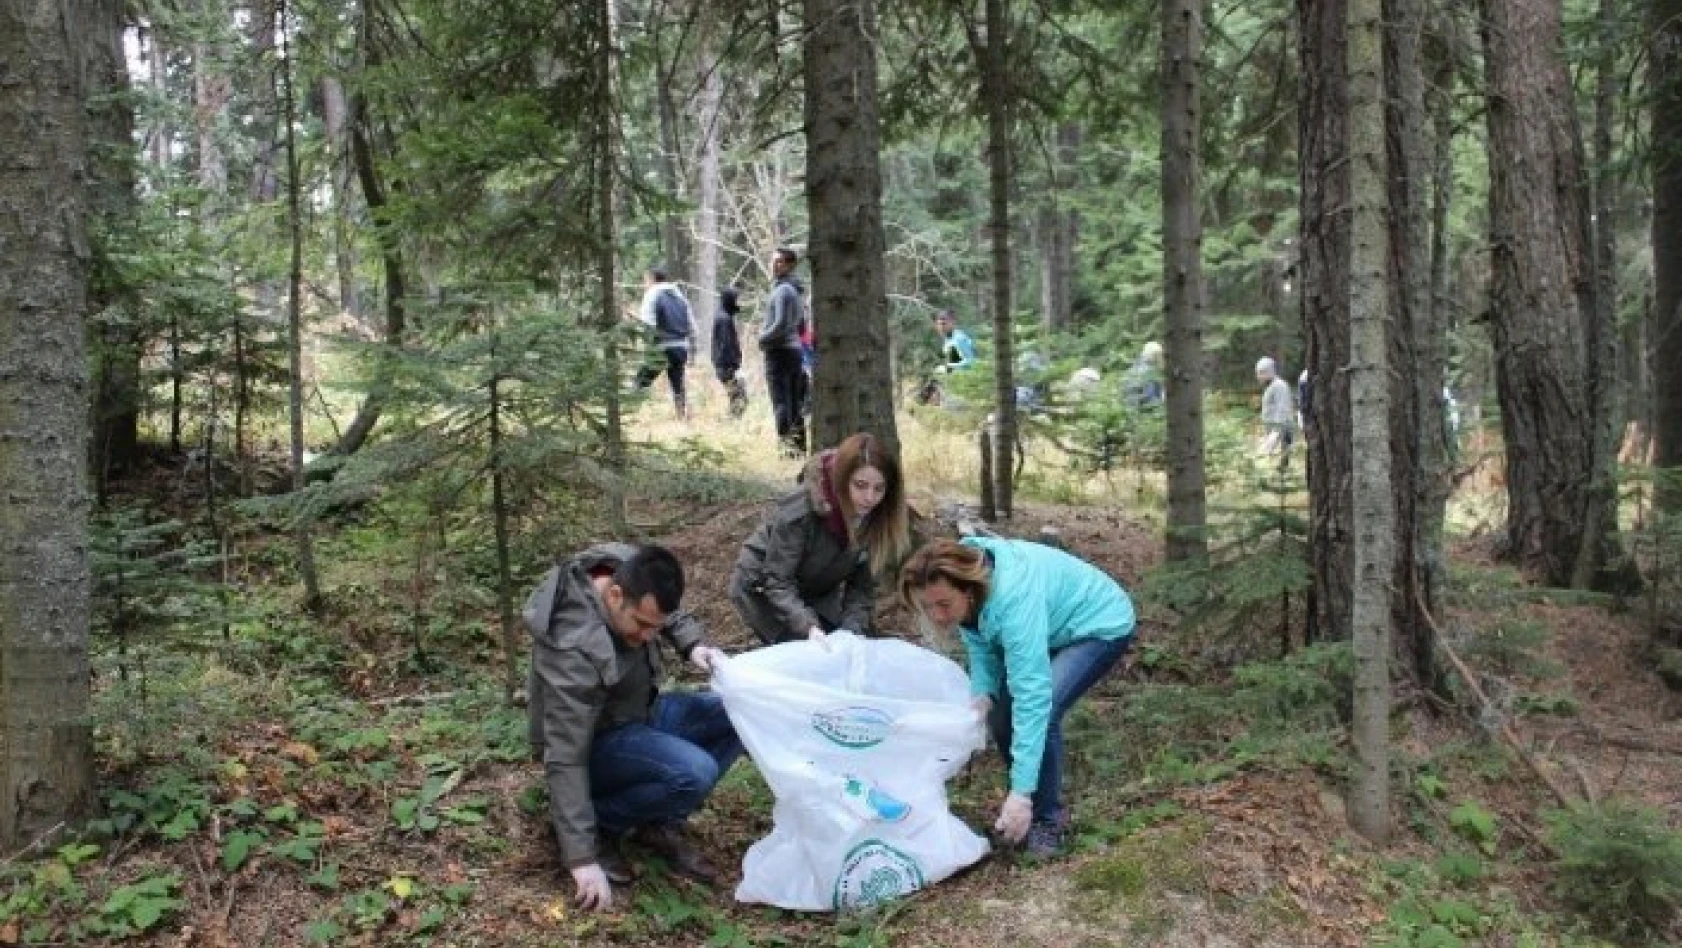 Ilgaz Dağı Milli Parkı'nda 'Milli Parkını Temiz Tut' sloganı ile çevre temizliği yapıldı